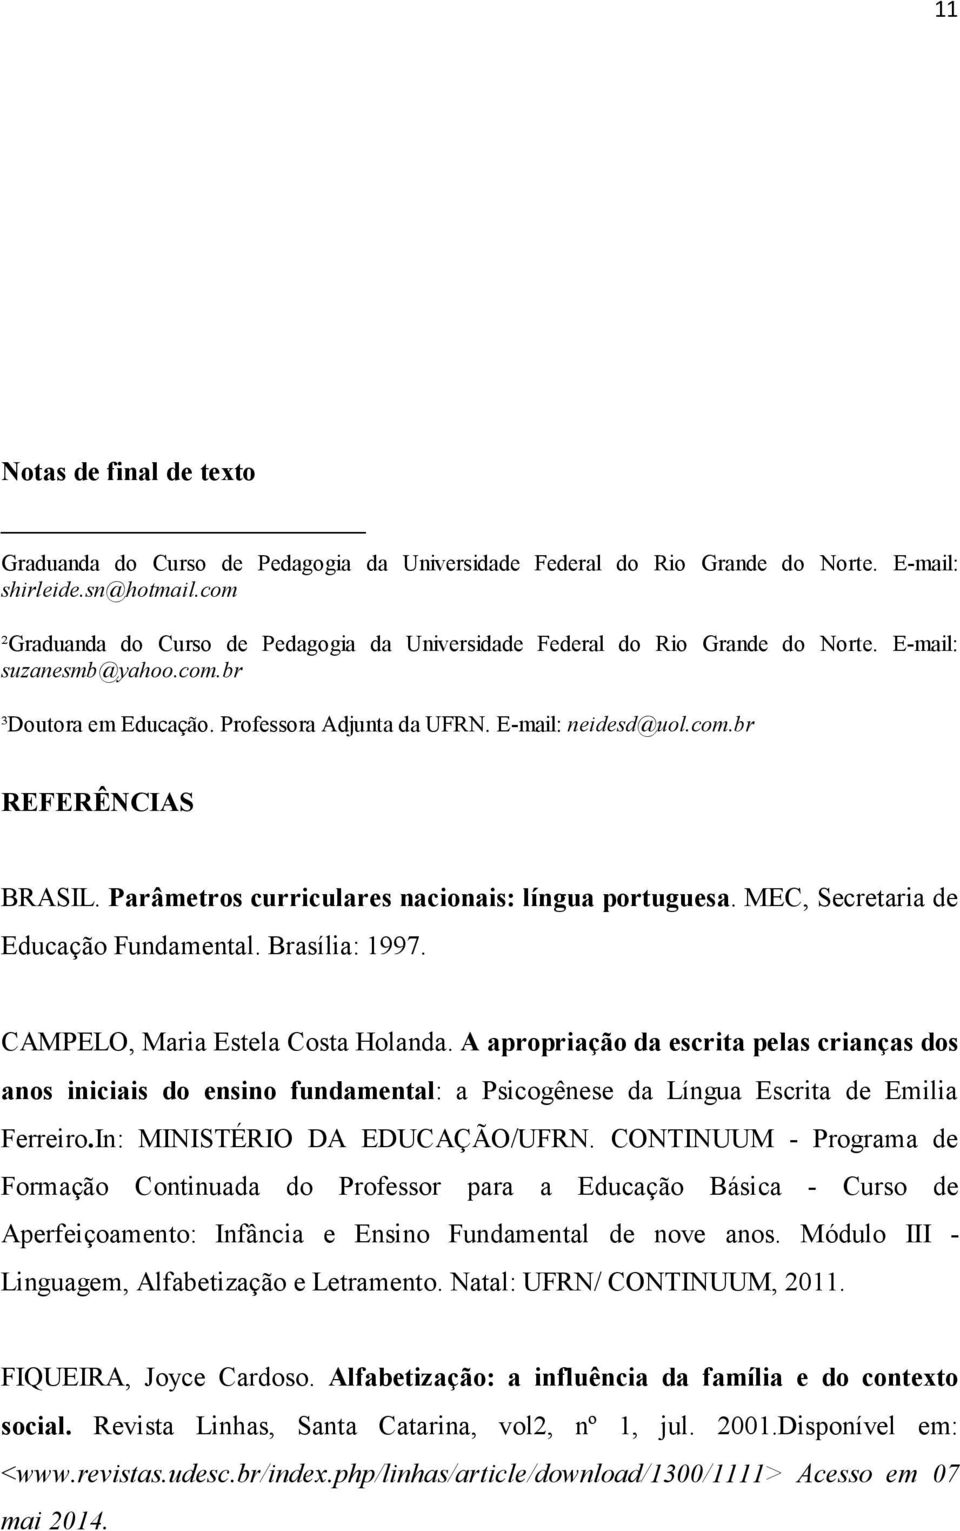 Parâmetros curriculares nacionais: língua portuguesa. MEC, Secretaria de Educação Fundamental. Brasília: 1997. CAMPELO, Maria Estela Costa Holanda.